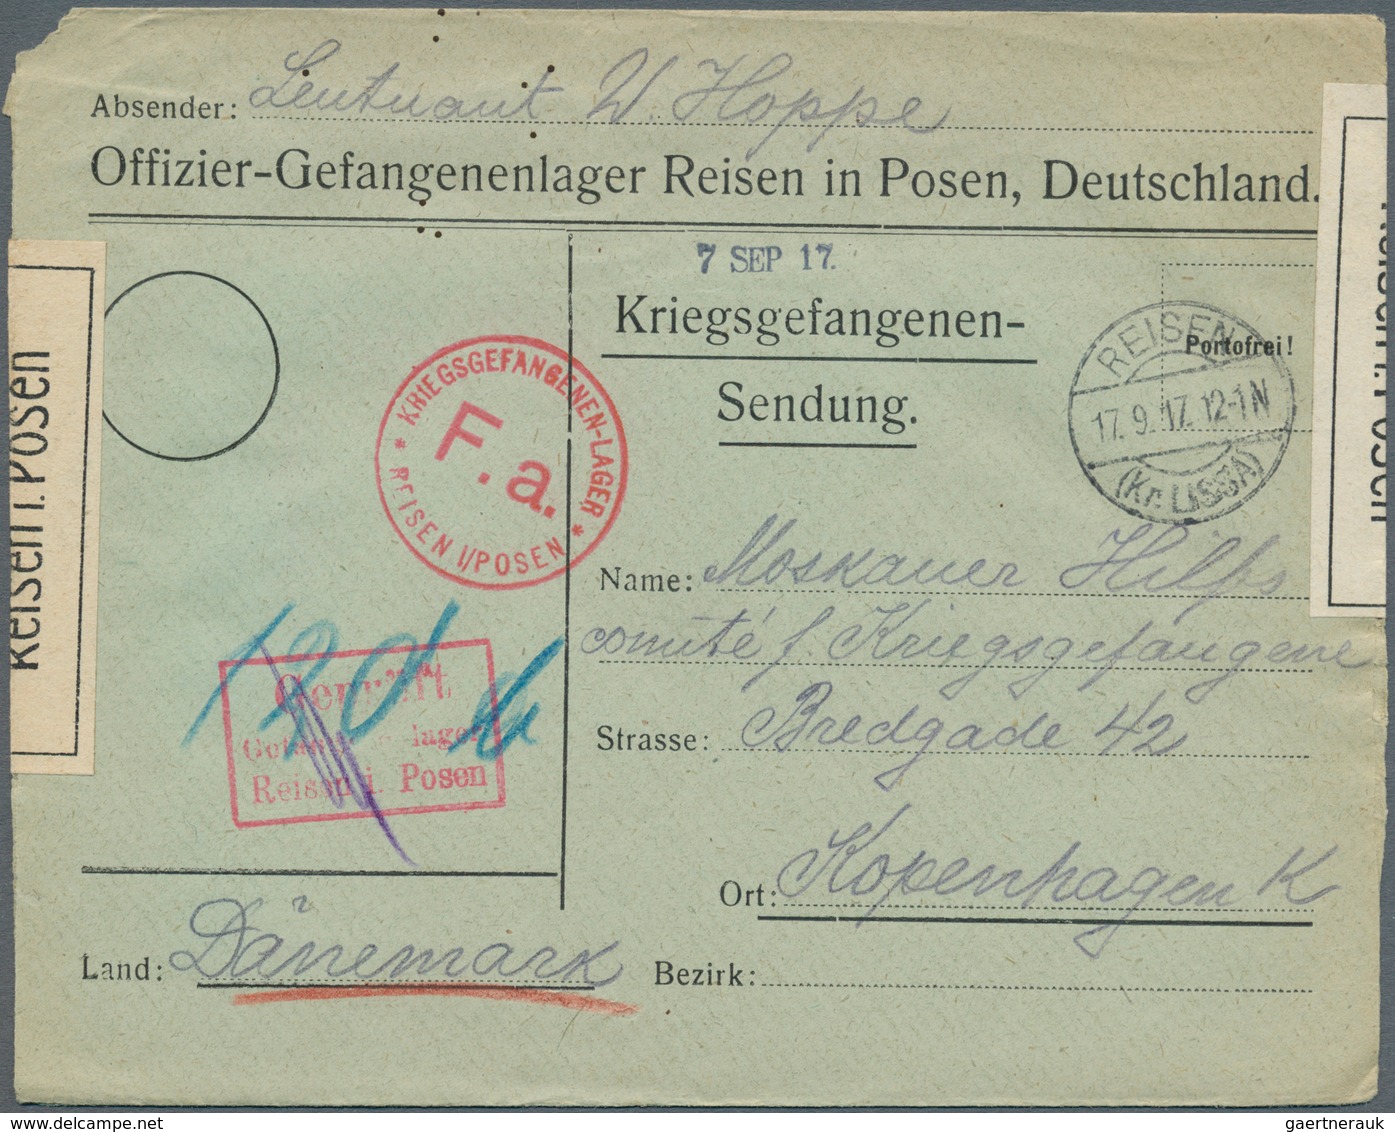 Feldpost 1. Weltkrieg: 1914/1918, vielfältiger Posten von ca. 120 Feldpostbriefen/-karten mit vielen